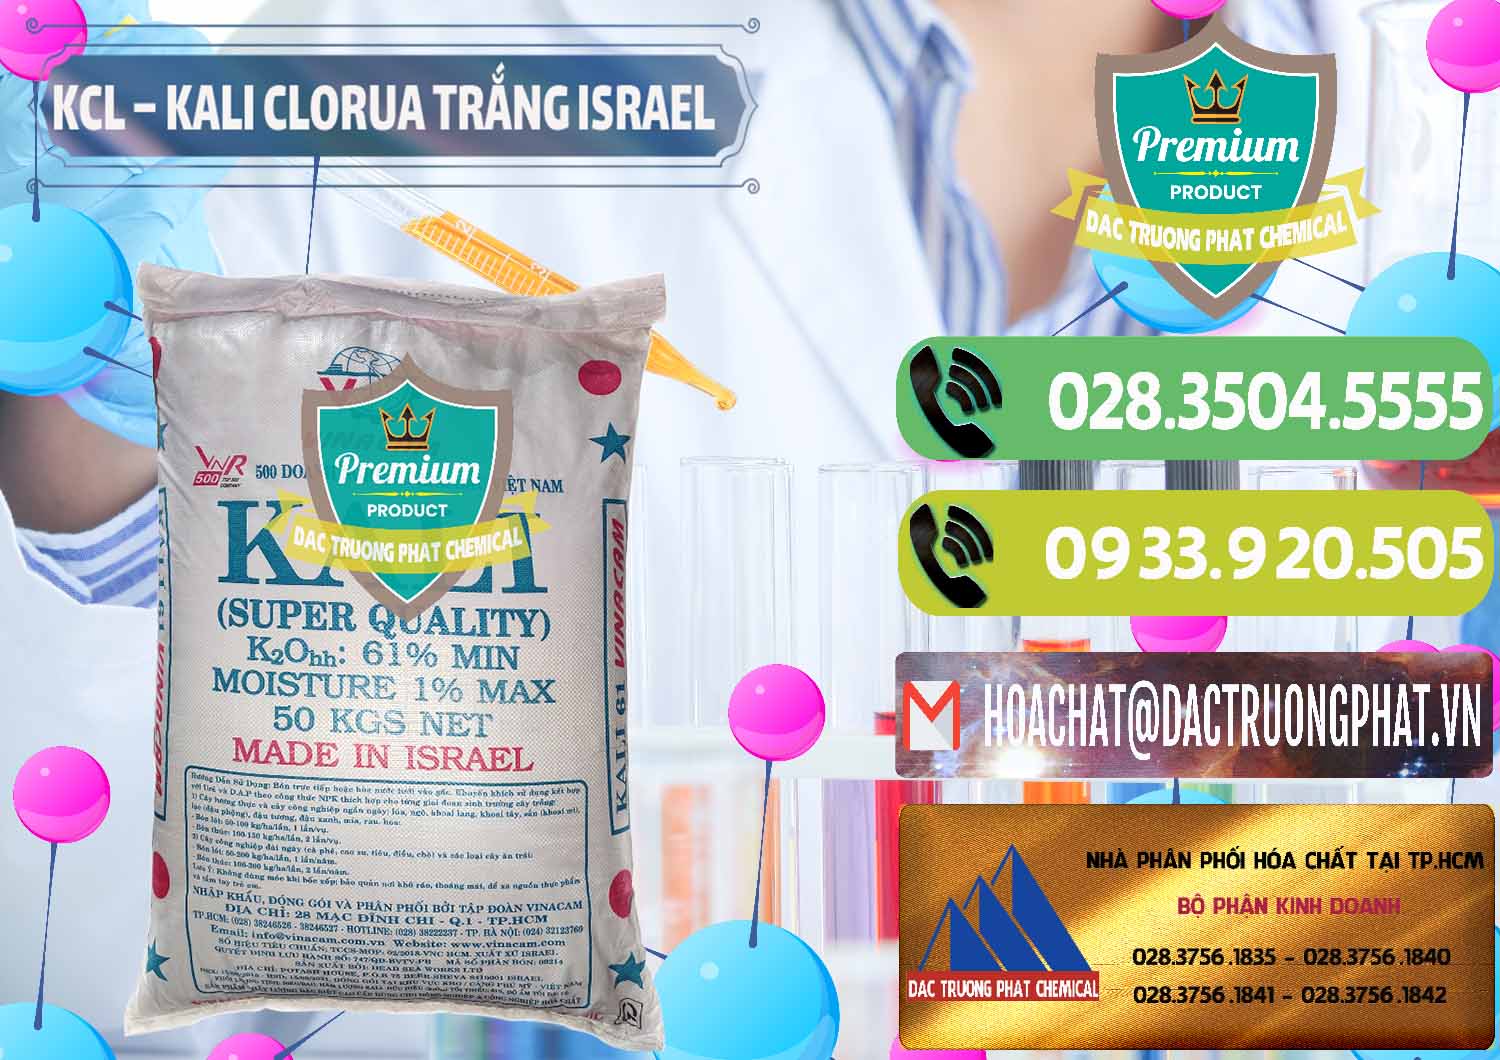 Phân phối - bán KCL – Kali Clorua Trắng Israel - 0087 - Cty cung cấp và bán hóa chất tại TP.HCM - hoachatmientay.vn